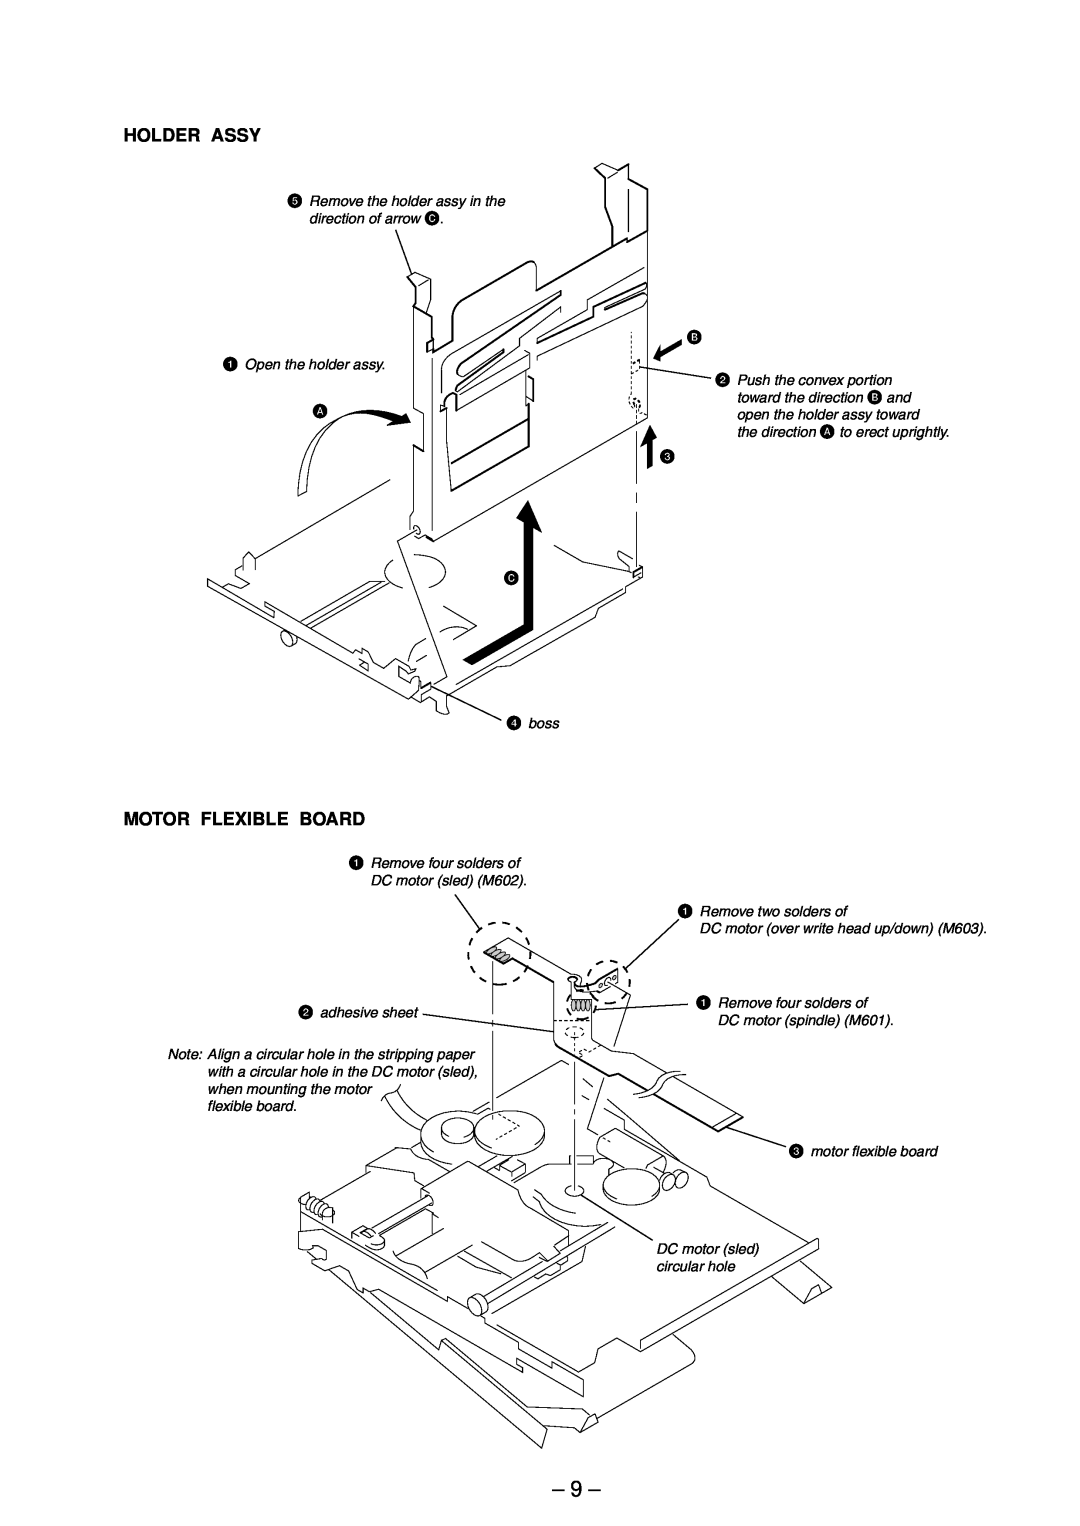 Sony MZ-R91 service manual Holder Assy, Motor Flexible Board 